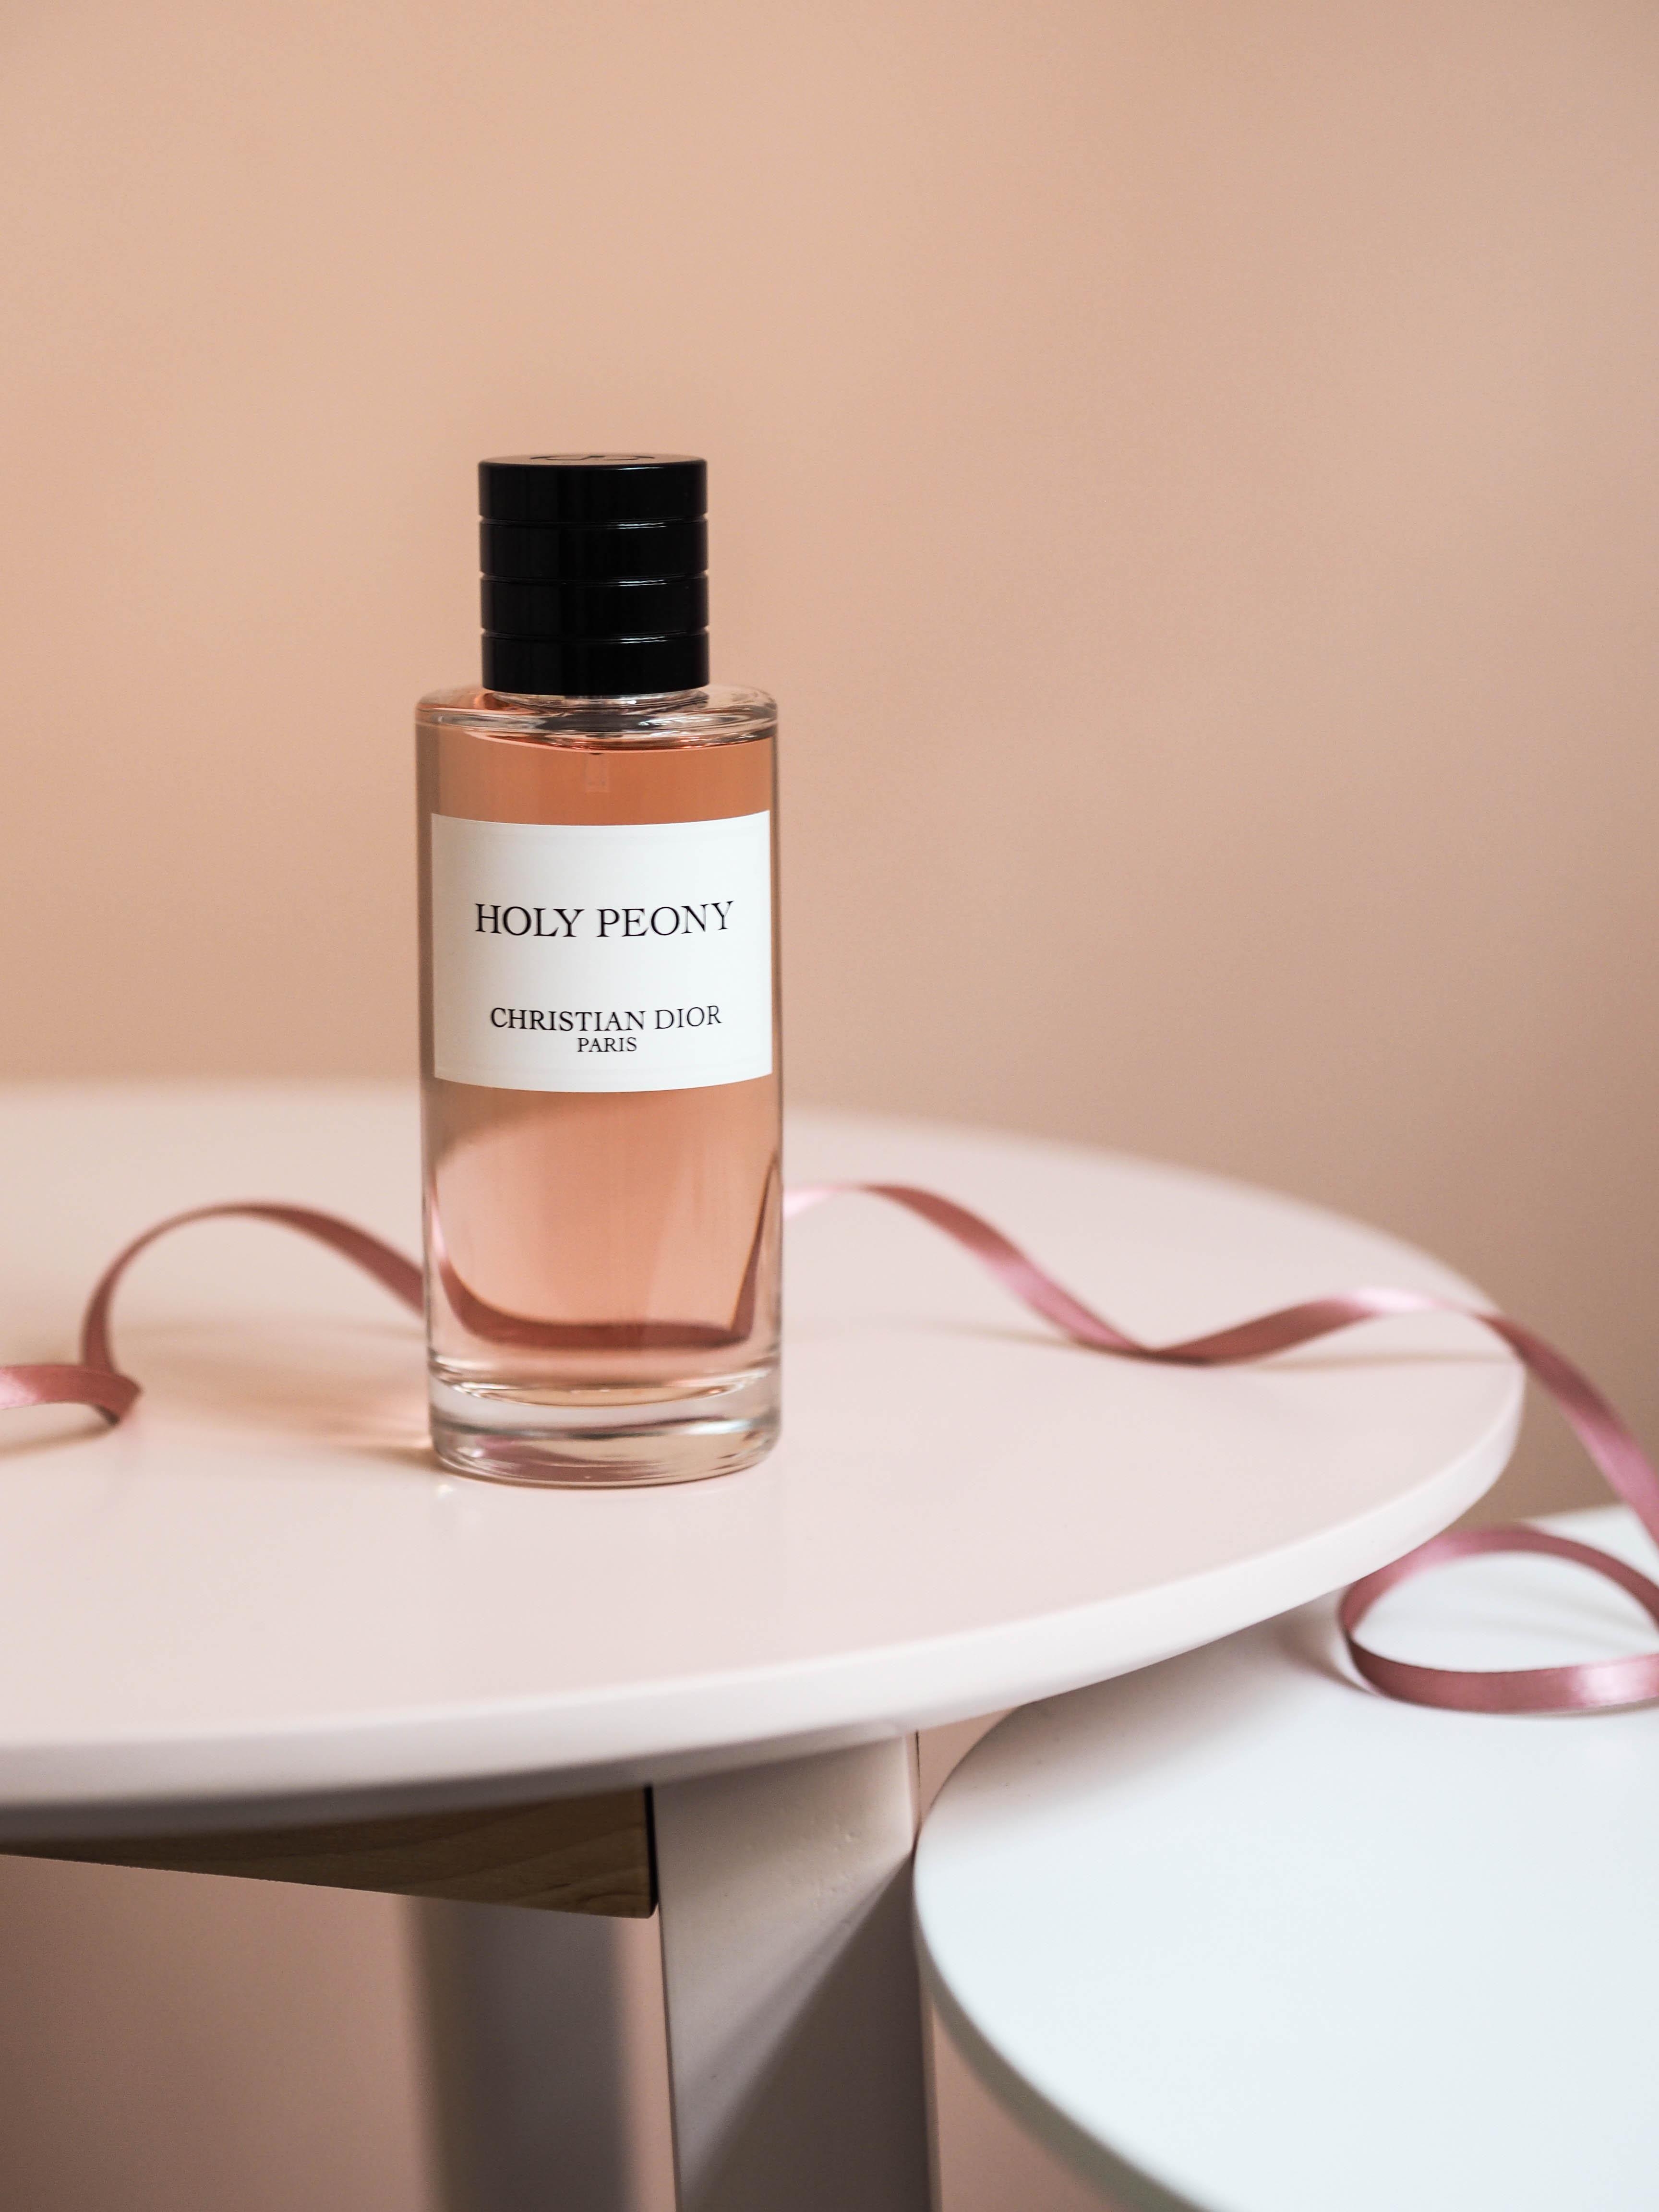 Unsere Lieblingsblume gibt’s dank „Holy Peony“ von Christian Dior jetzt auch als Duft! #beautylieblinge #dior #parfum
